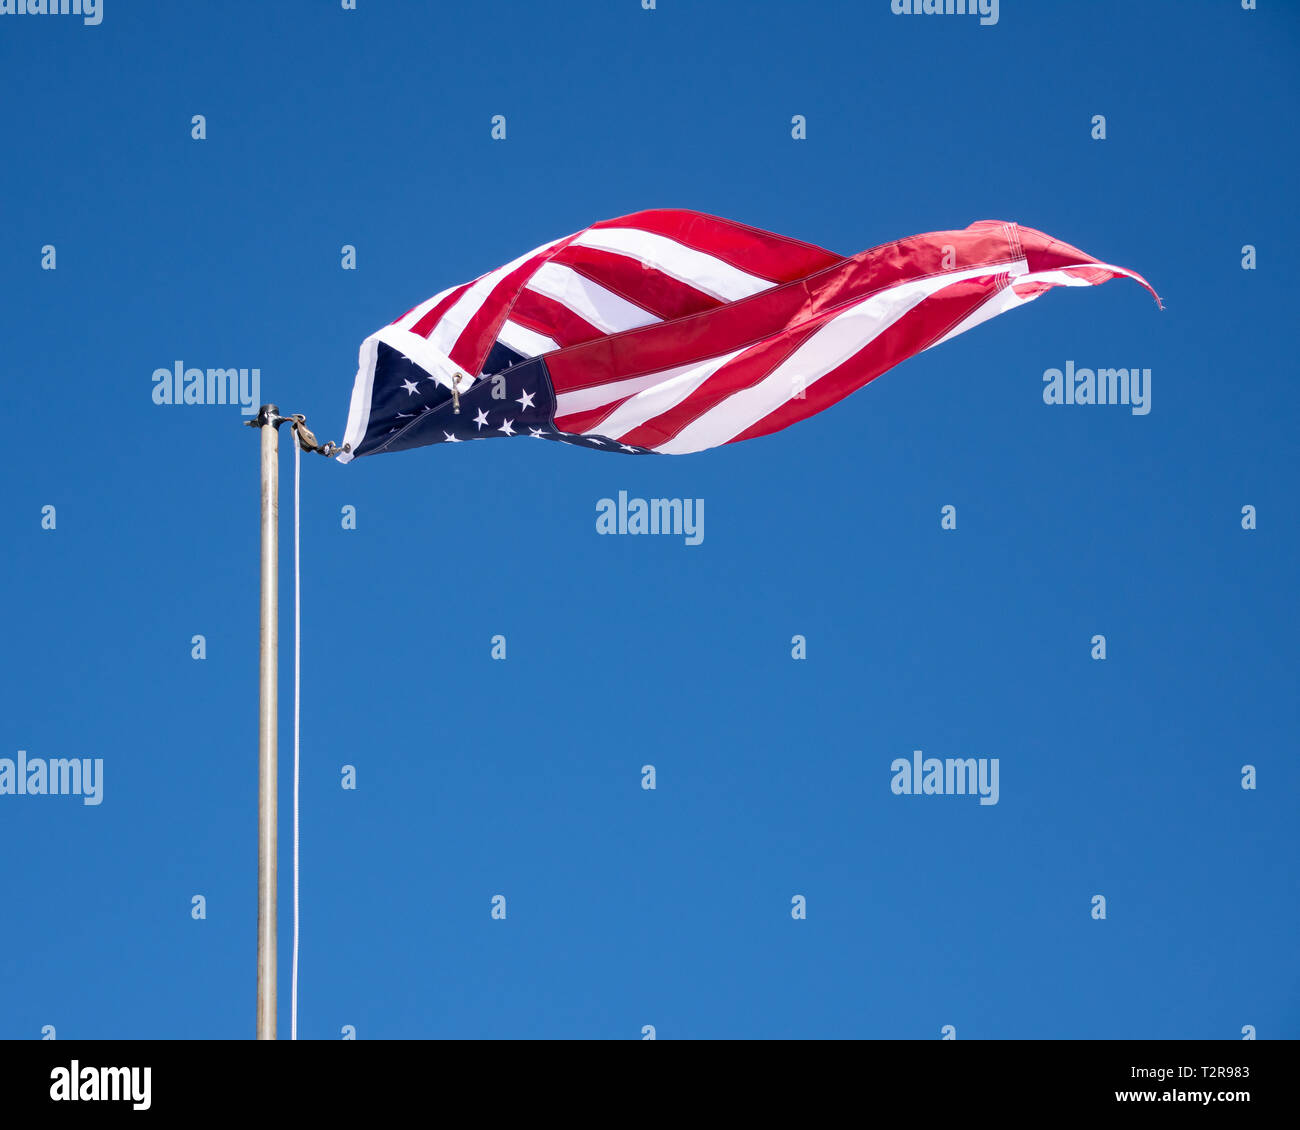 Un drapeau américain détaché de la ligne se tordre dans le vent contre un ciel bleu clair. Banque D'Images